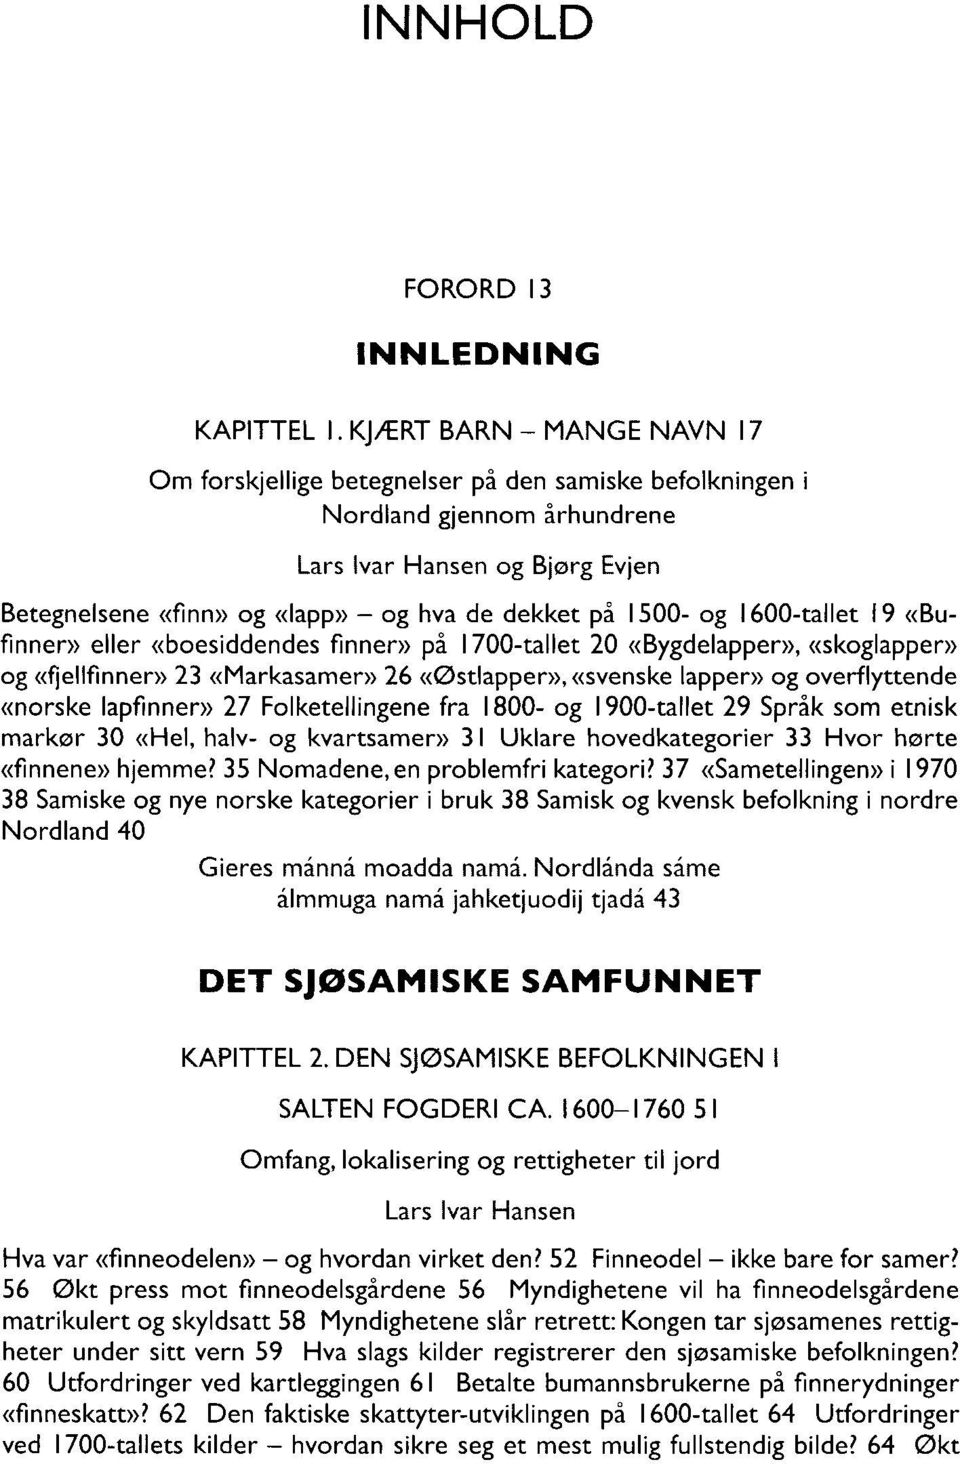 1500- og 1600-tallet 19 «Bufinner» eller «boesiddendes finner» på 1700-tallet 20 «Bygdelapper», «skoglapper» og «fjellfinner» 23 «Markasamer» 26 «Østlapper», «svenske lapper» og overflyttende «norske